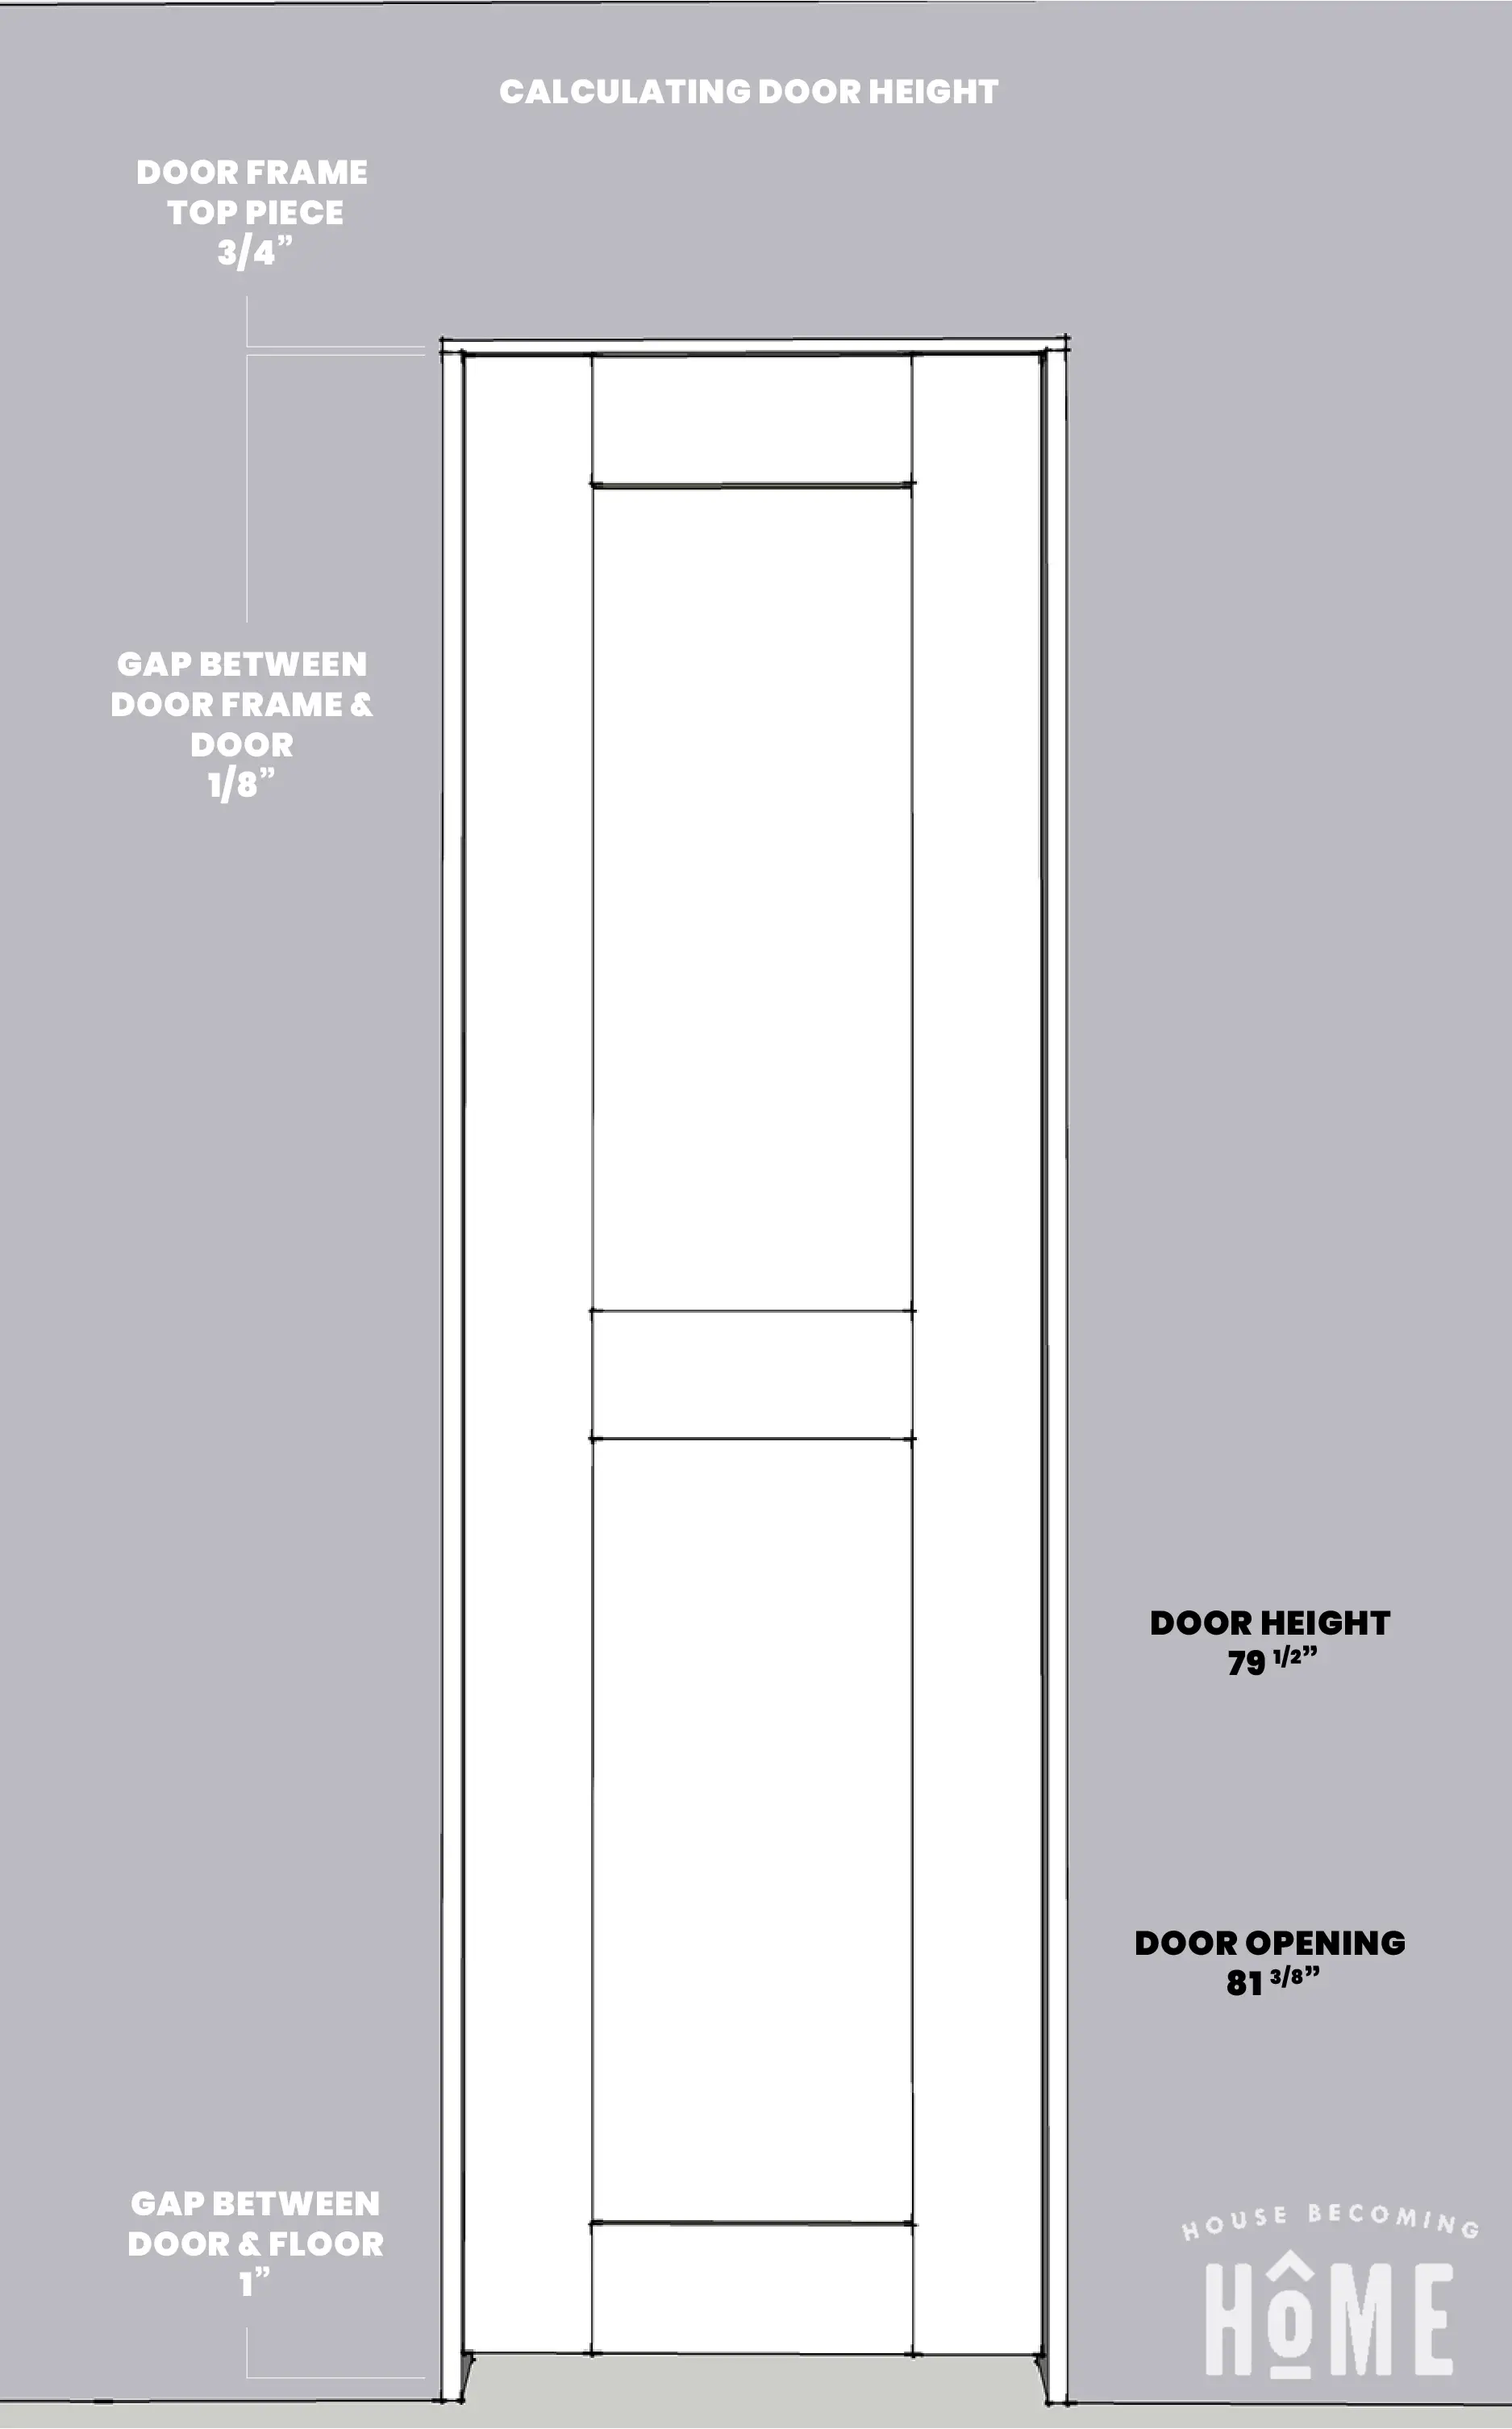 DIY Shaker Style Door Height Measurements